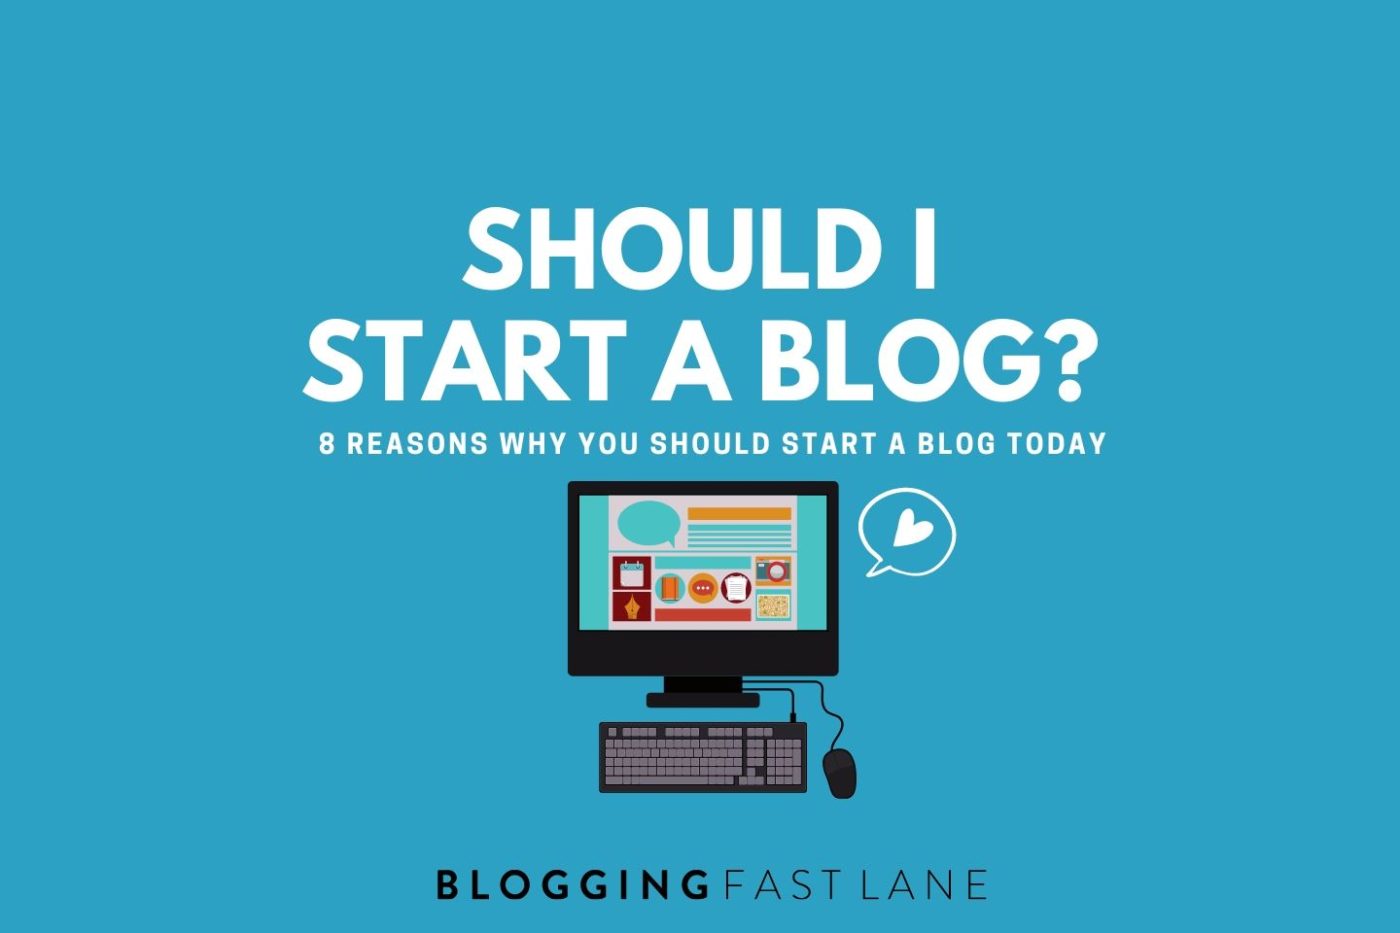 Should I start a blog?